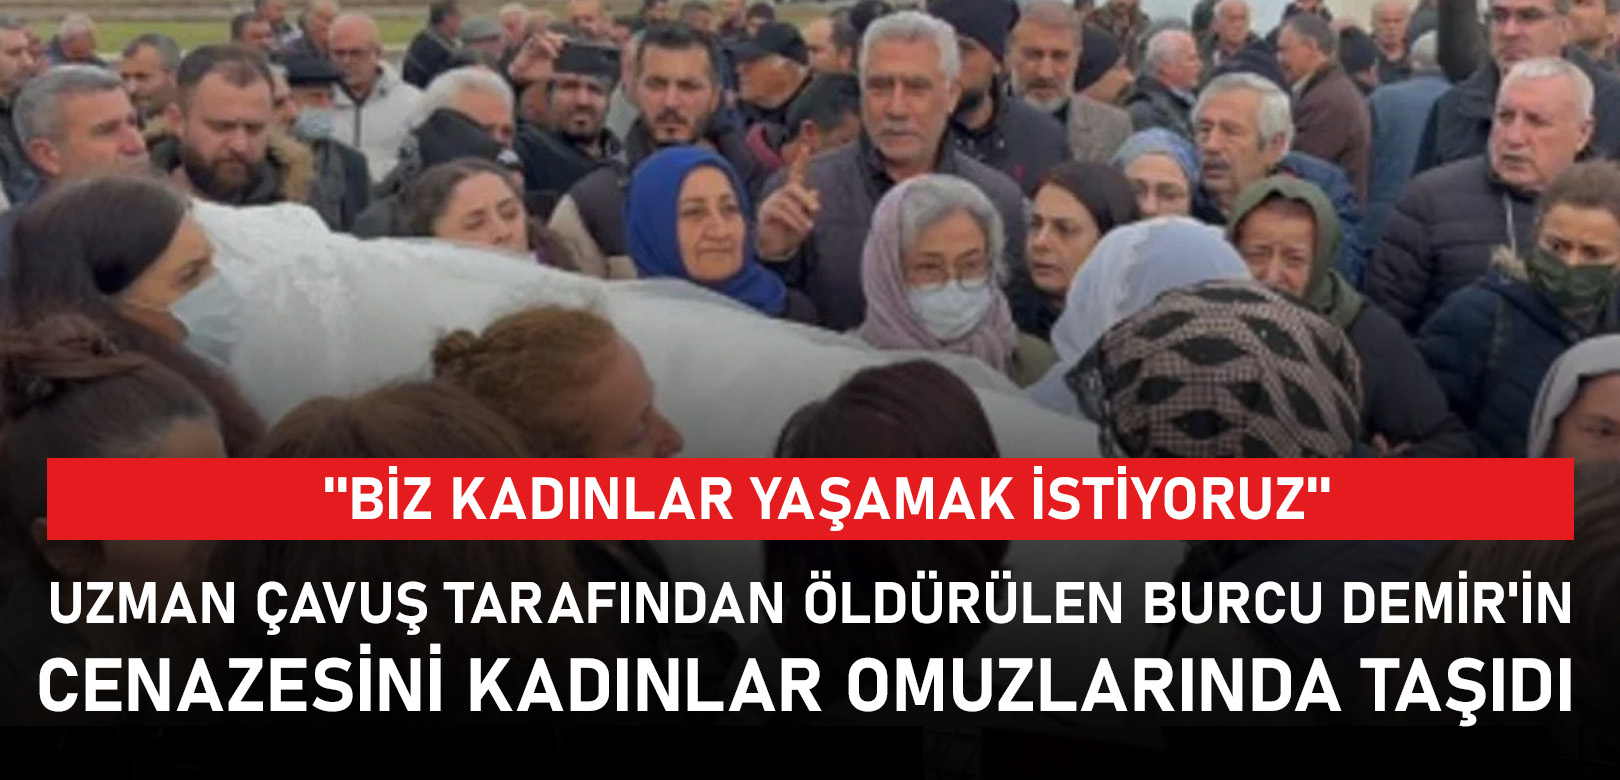 Uzman çavuş tarafından öldürülen Burcu Demir'in cenazesini kadınlar omuzlarında taşıdı: ''Biz kadınlar yaşamak istiyoruz''